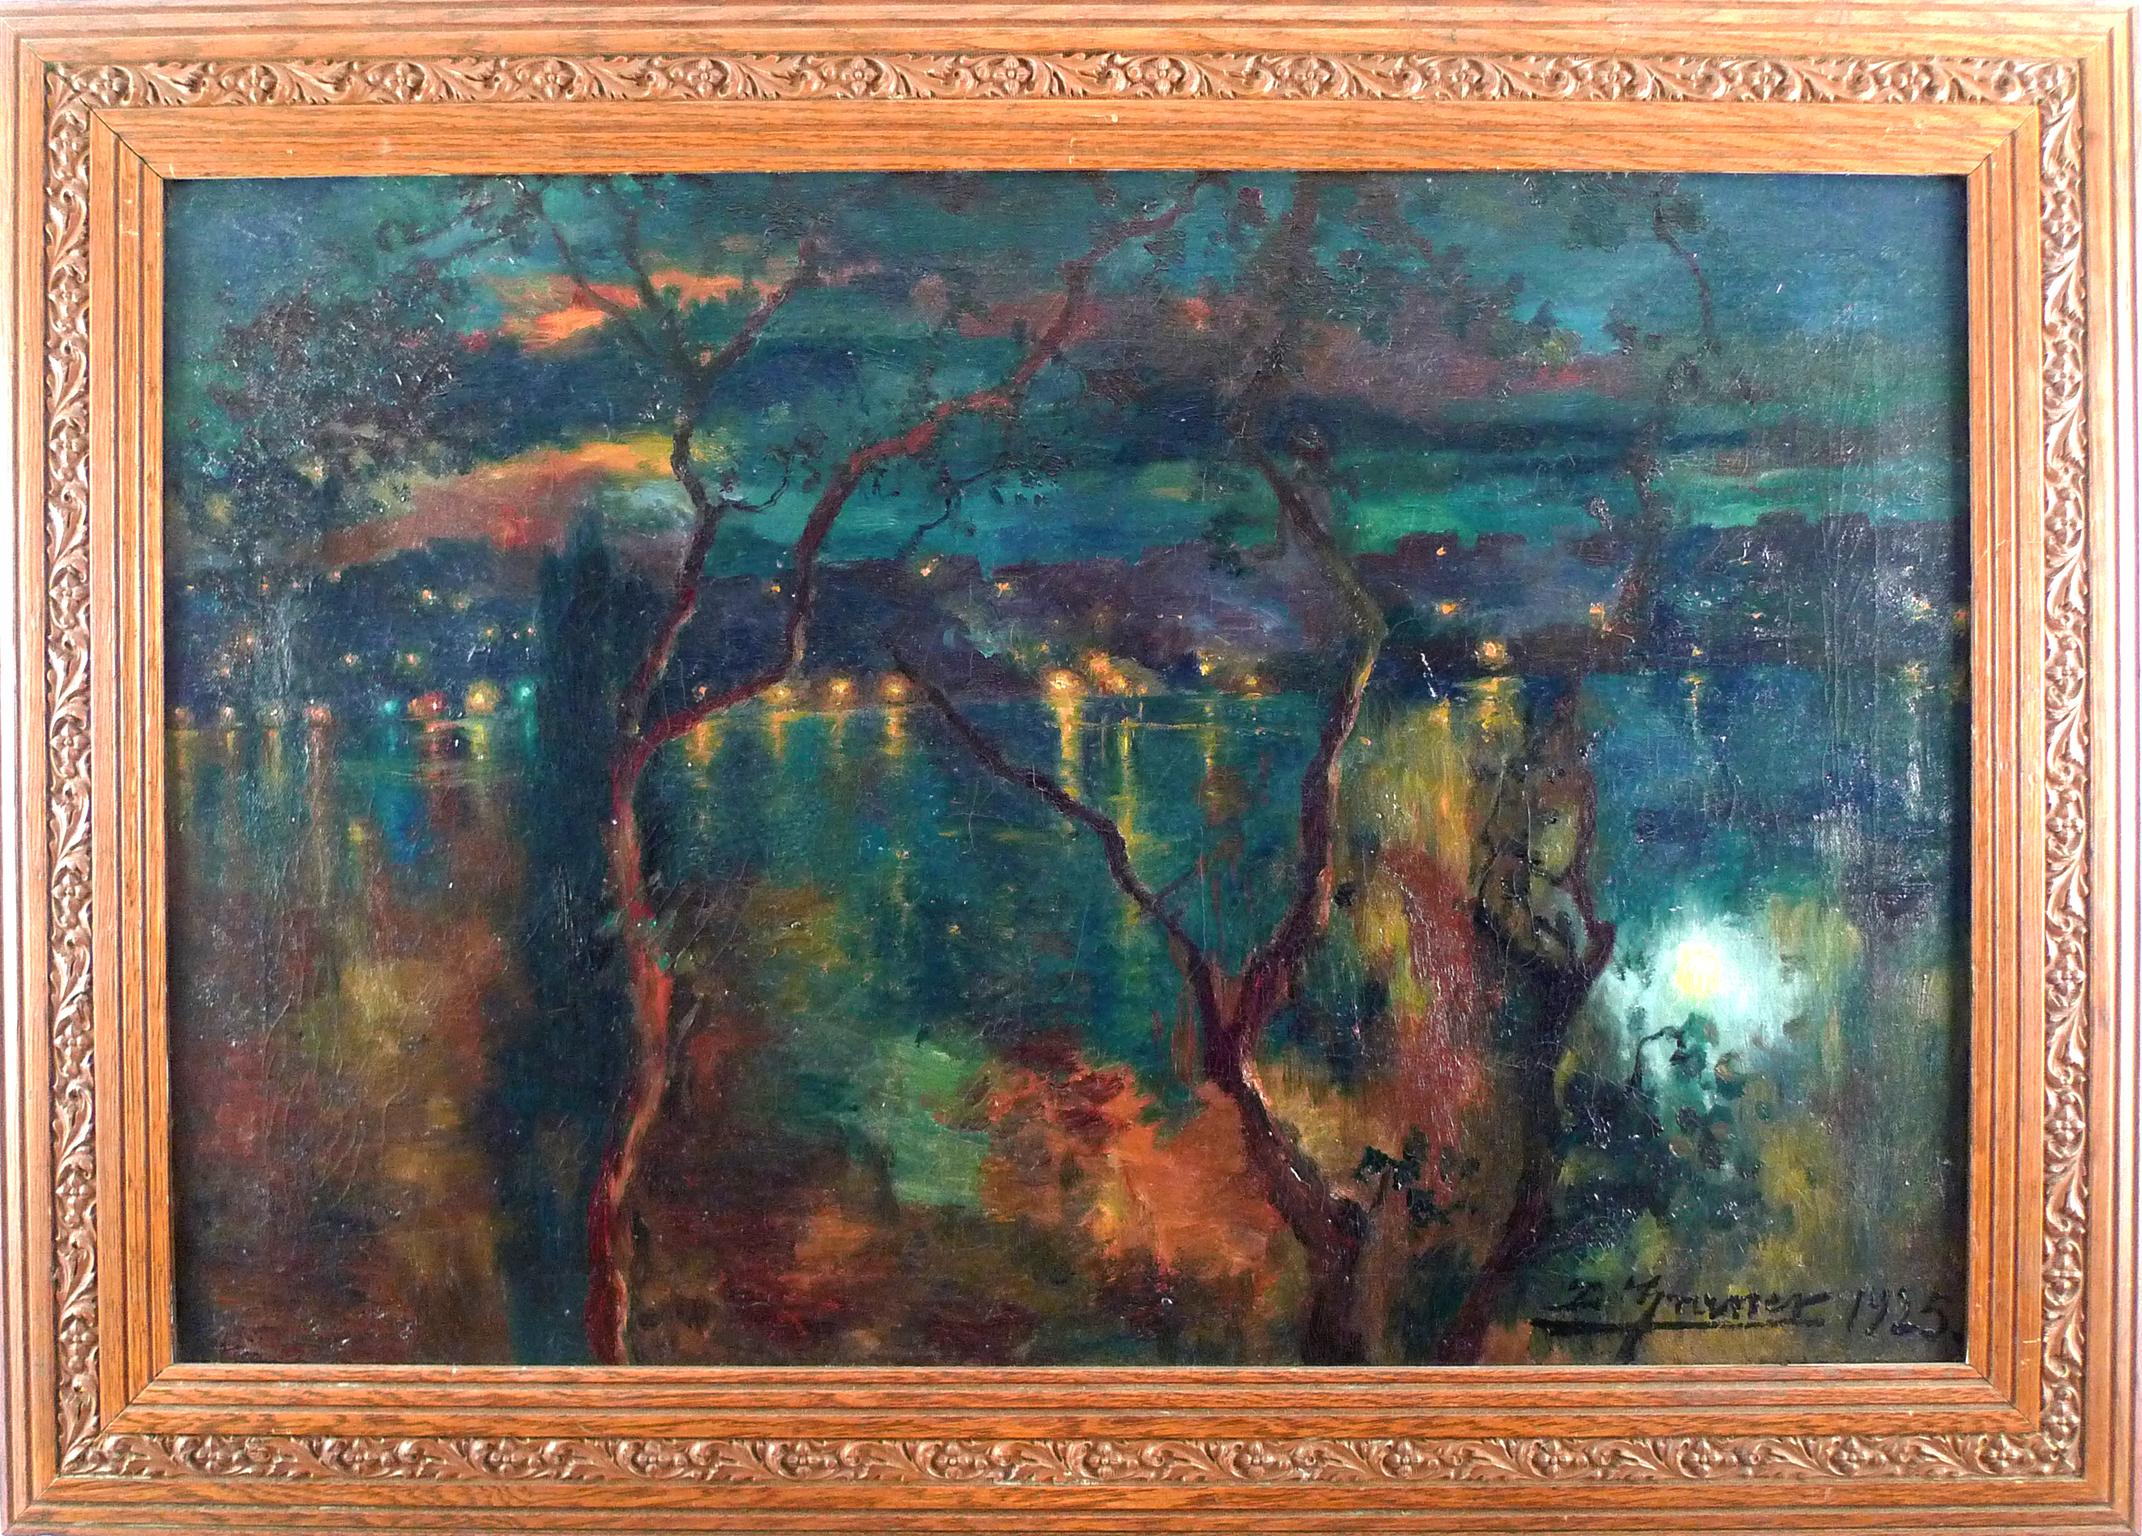 « Scène de rivière illuminée », huile sur toile de Luis Graner y Arrufi, début du 20e siècle  - Painting de Luis Graner Y Arrufi